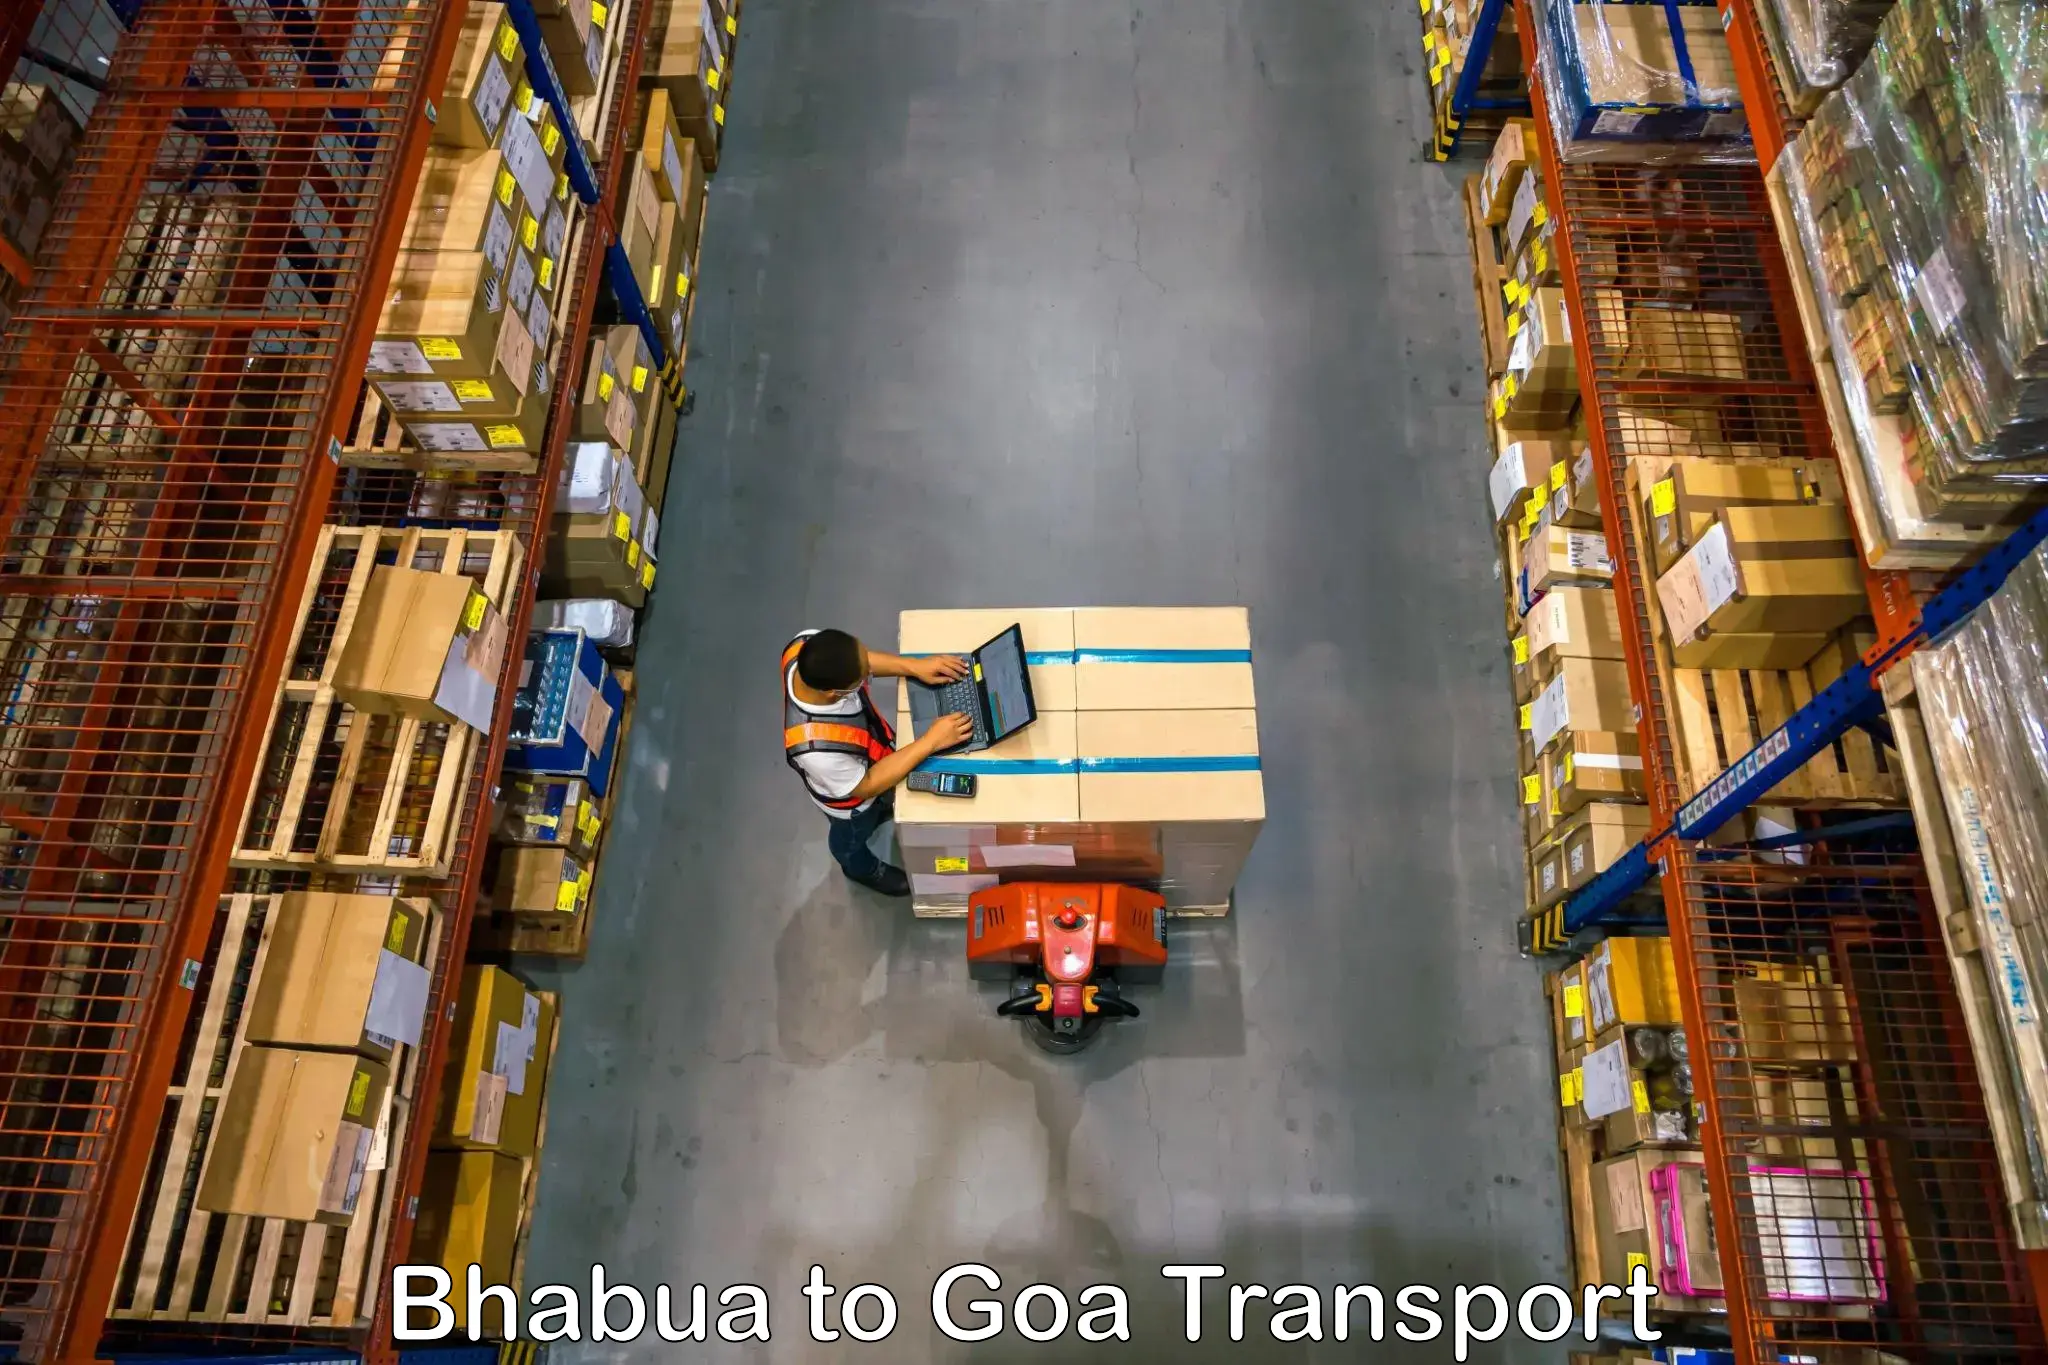 Air freight transport services Bhabua to Mormugao Port